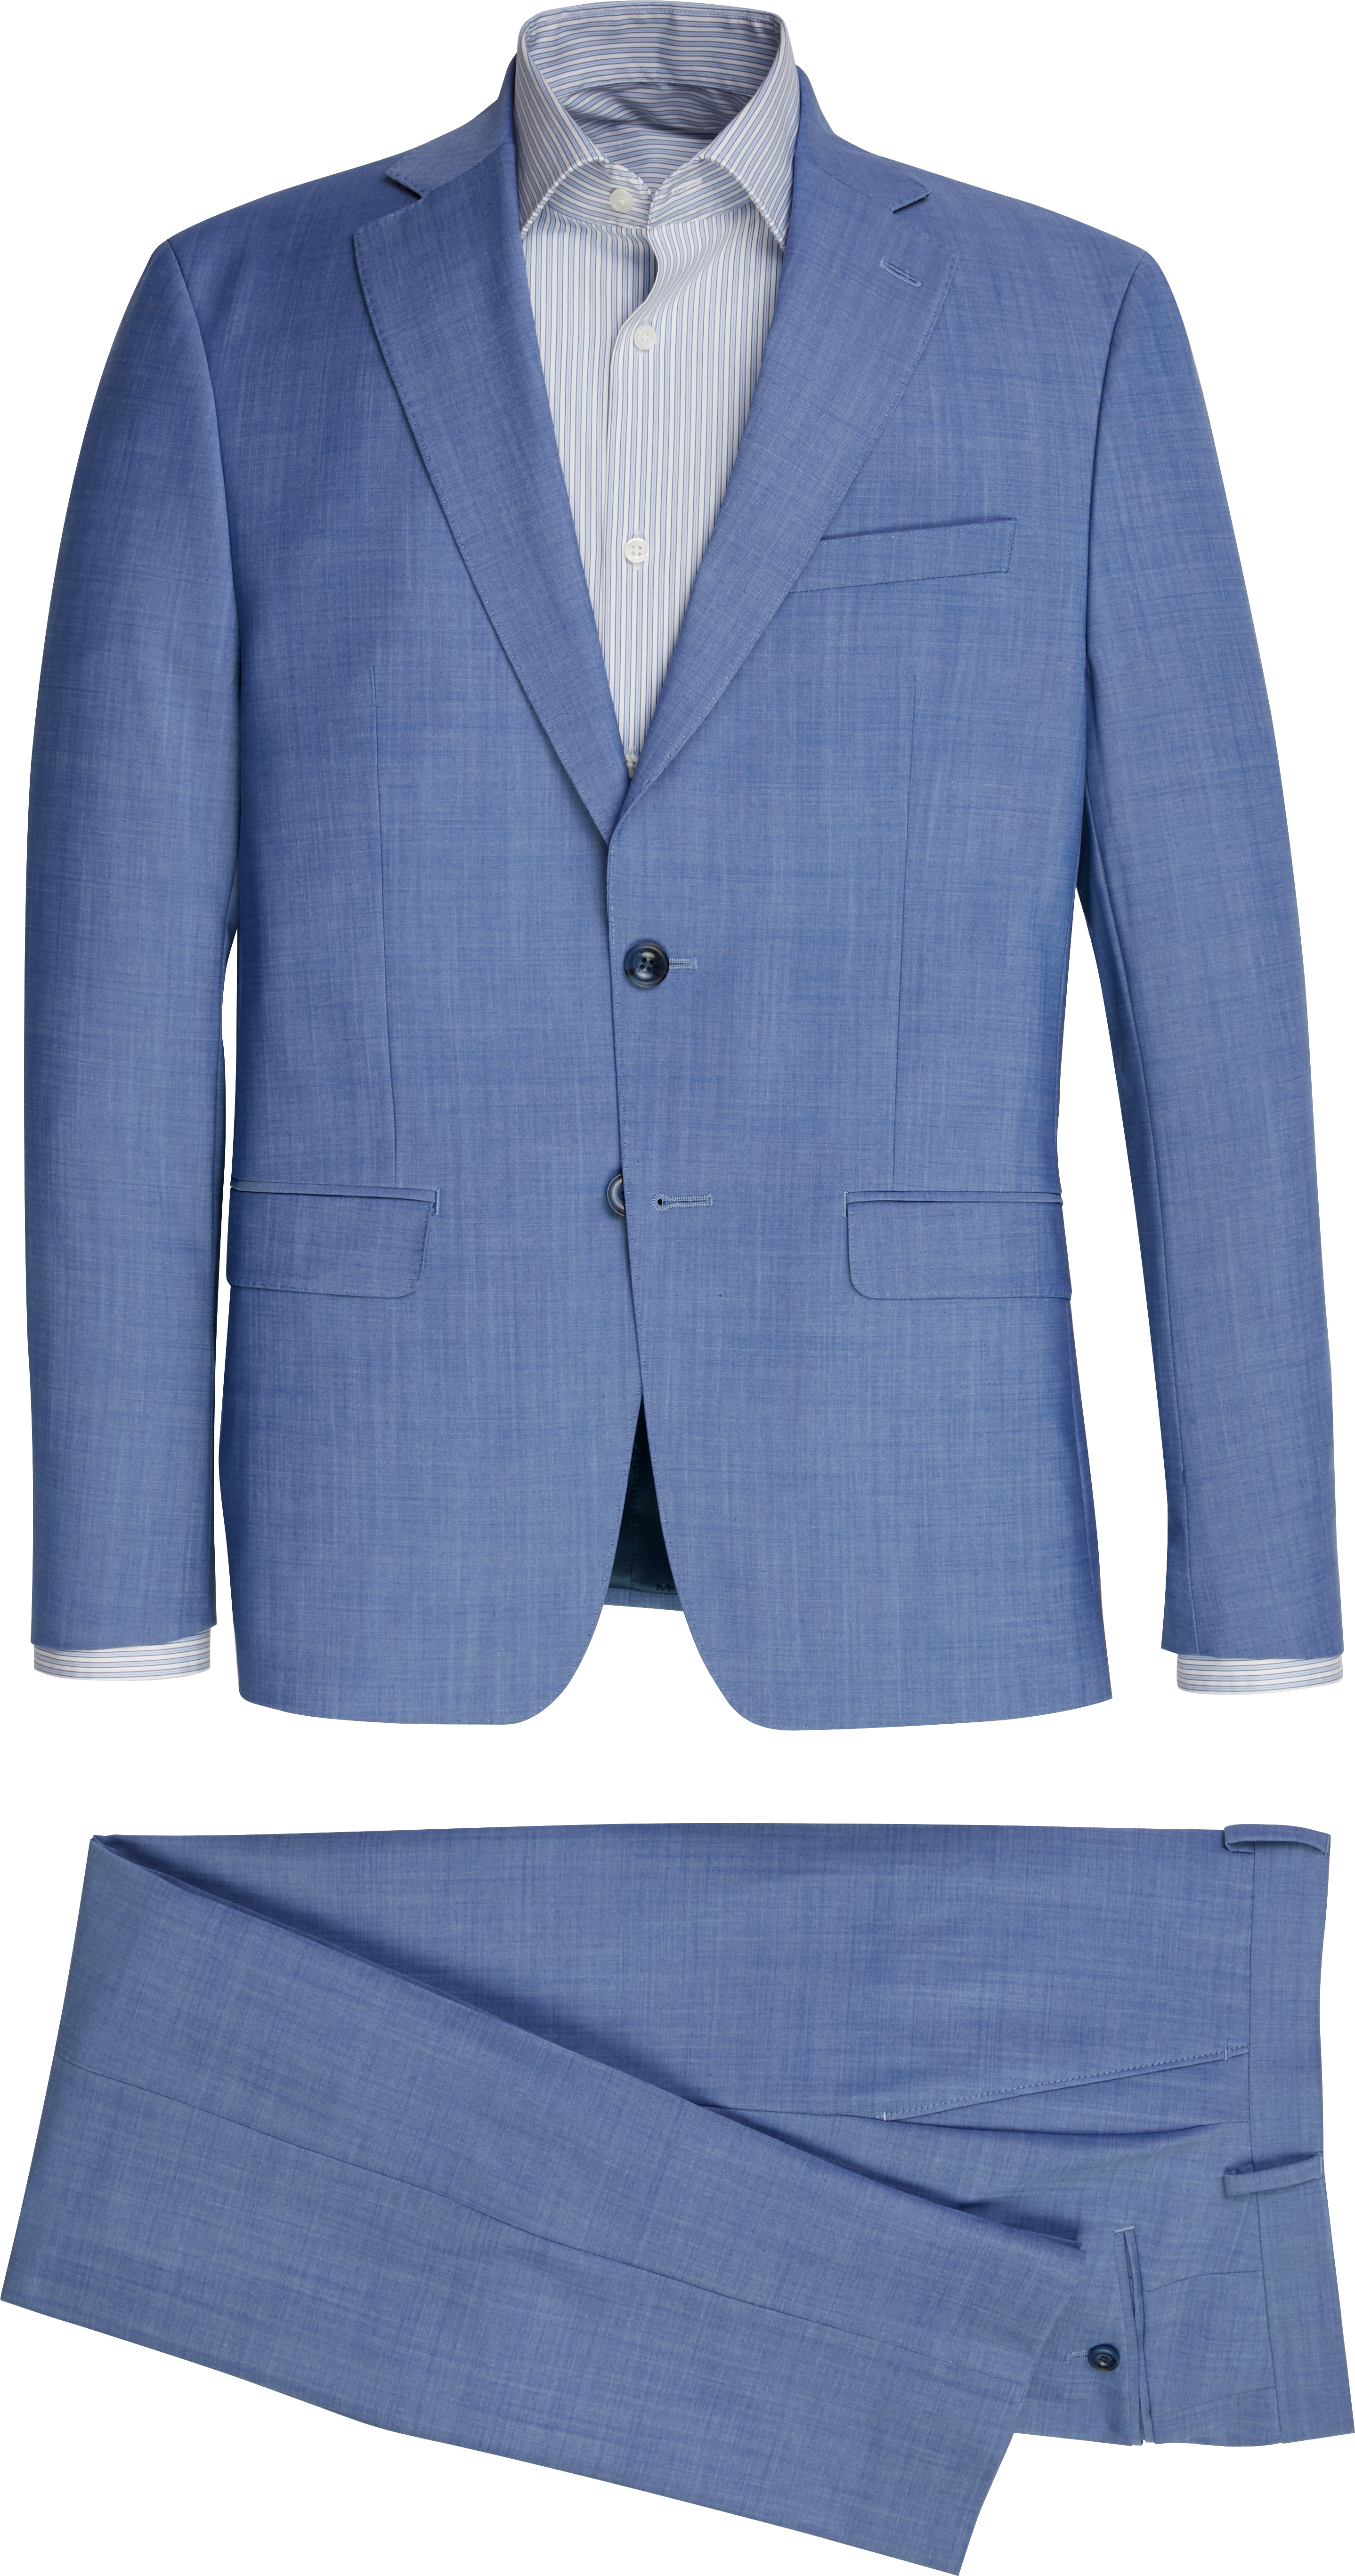 michael kors blue suit